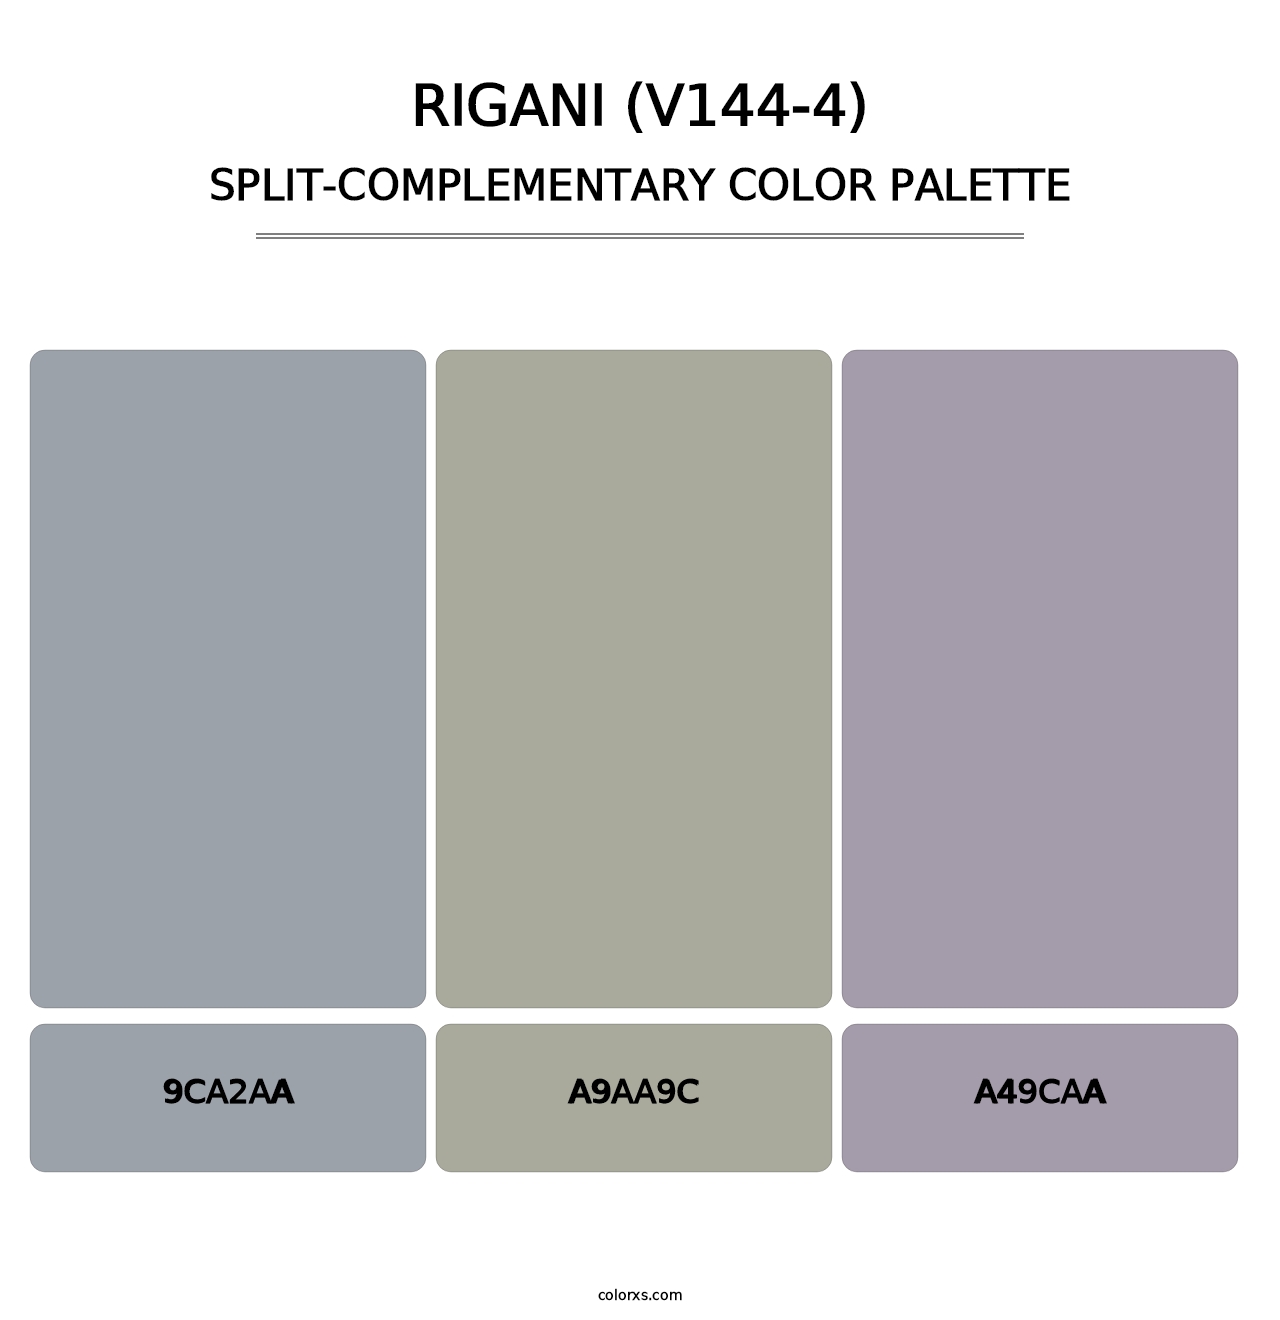 Rigani (V144-4) - Split-Complementary Color Palette